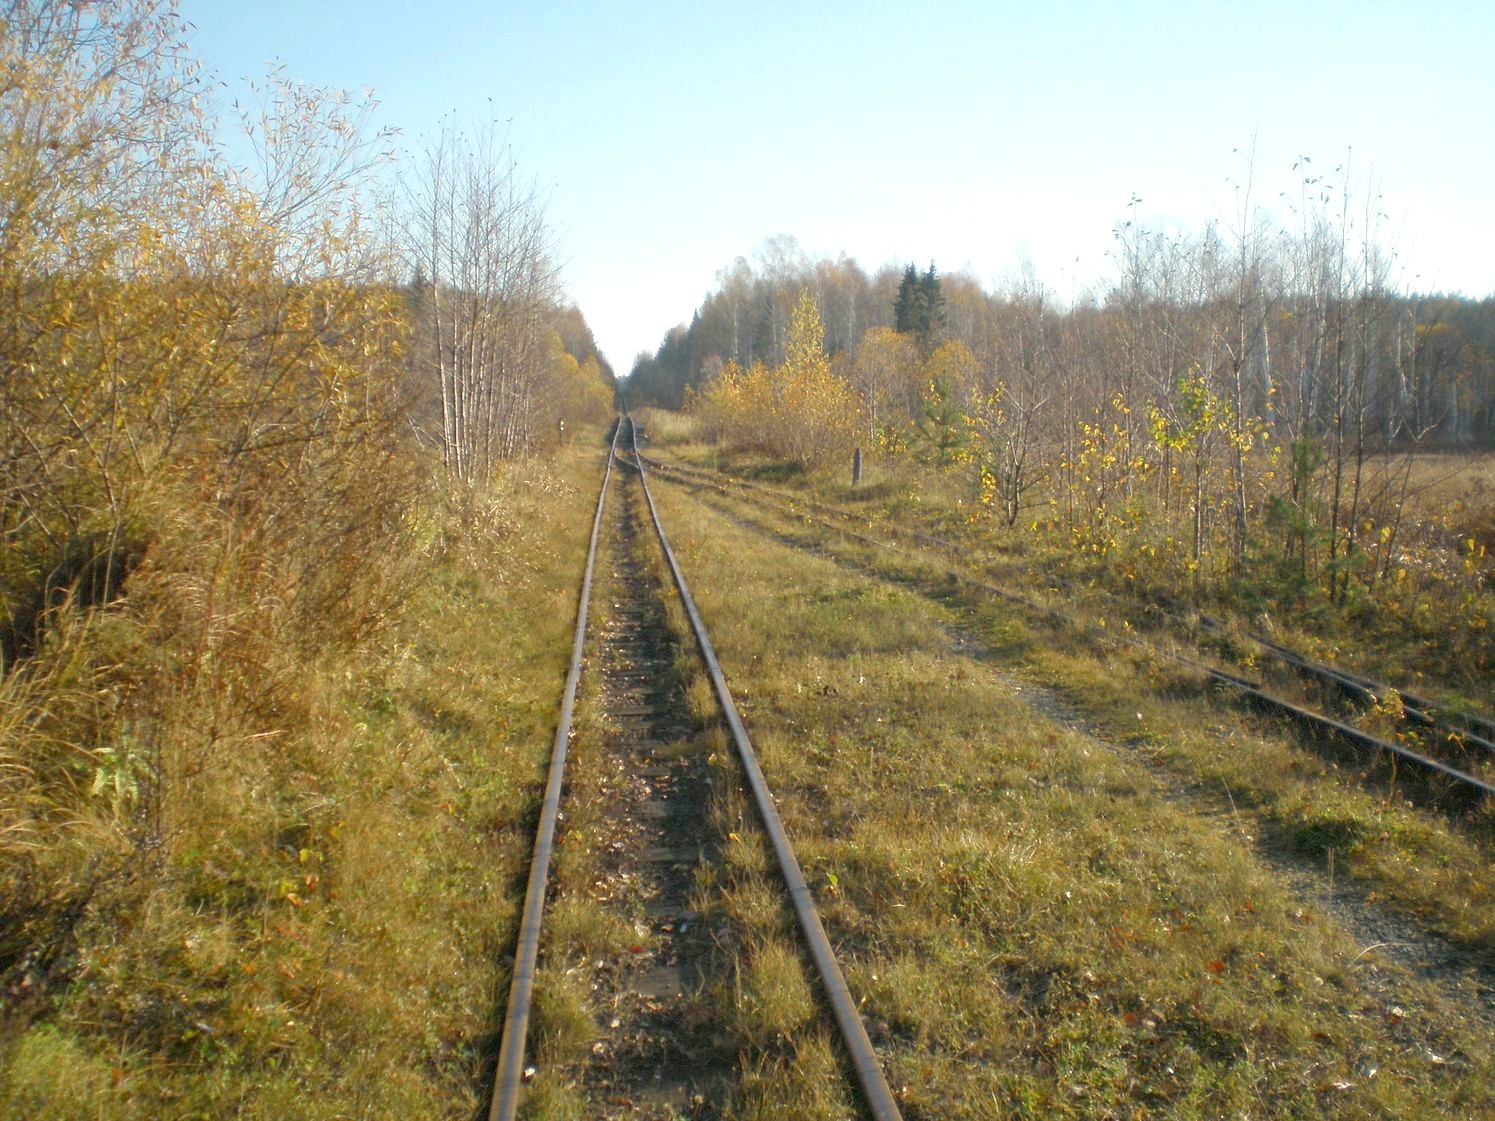 Висимо-Уткинская узкоколейная железная дорога  — фотографии, сделанные в 2007 году (часть 21)